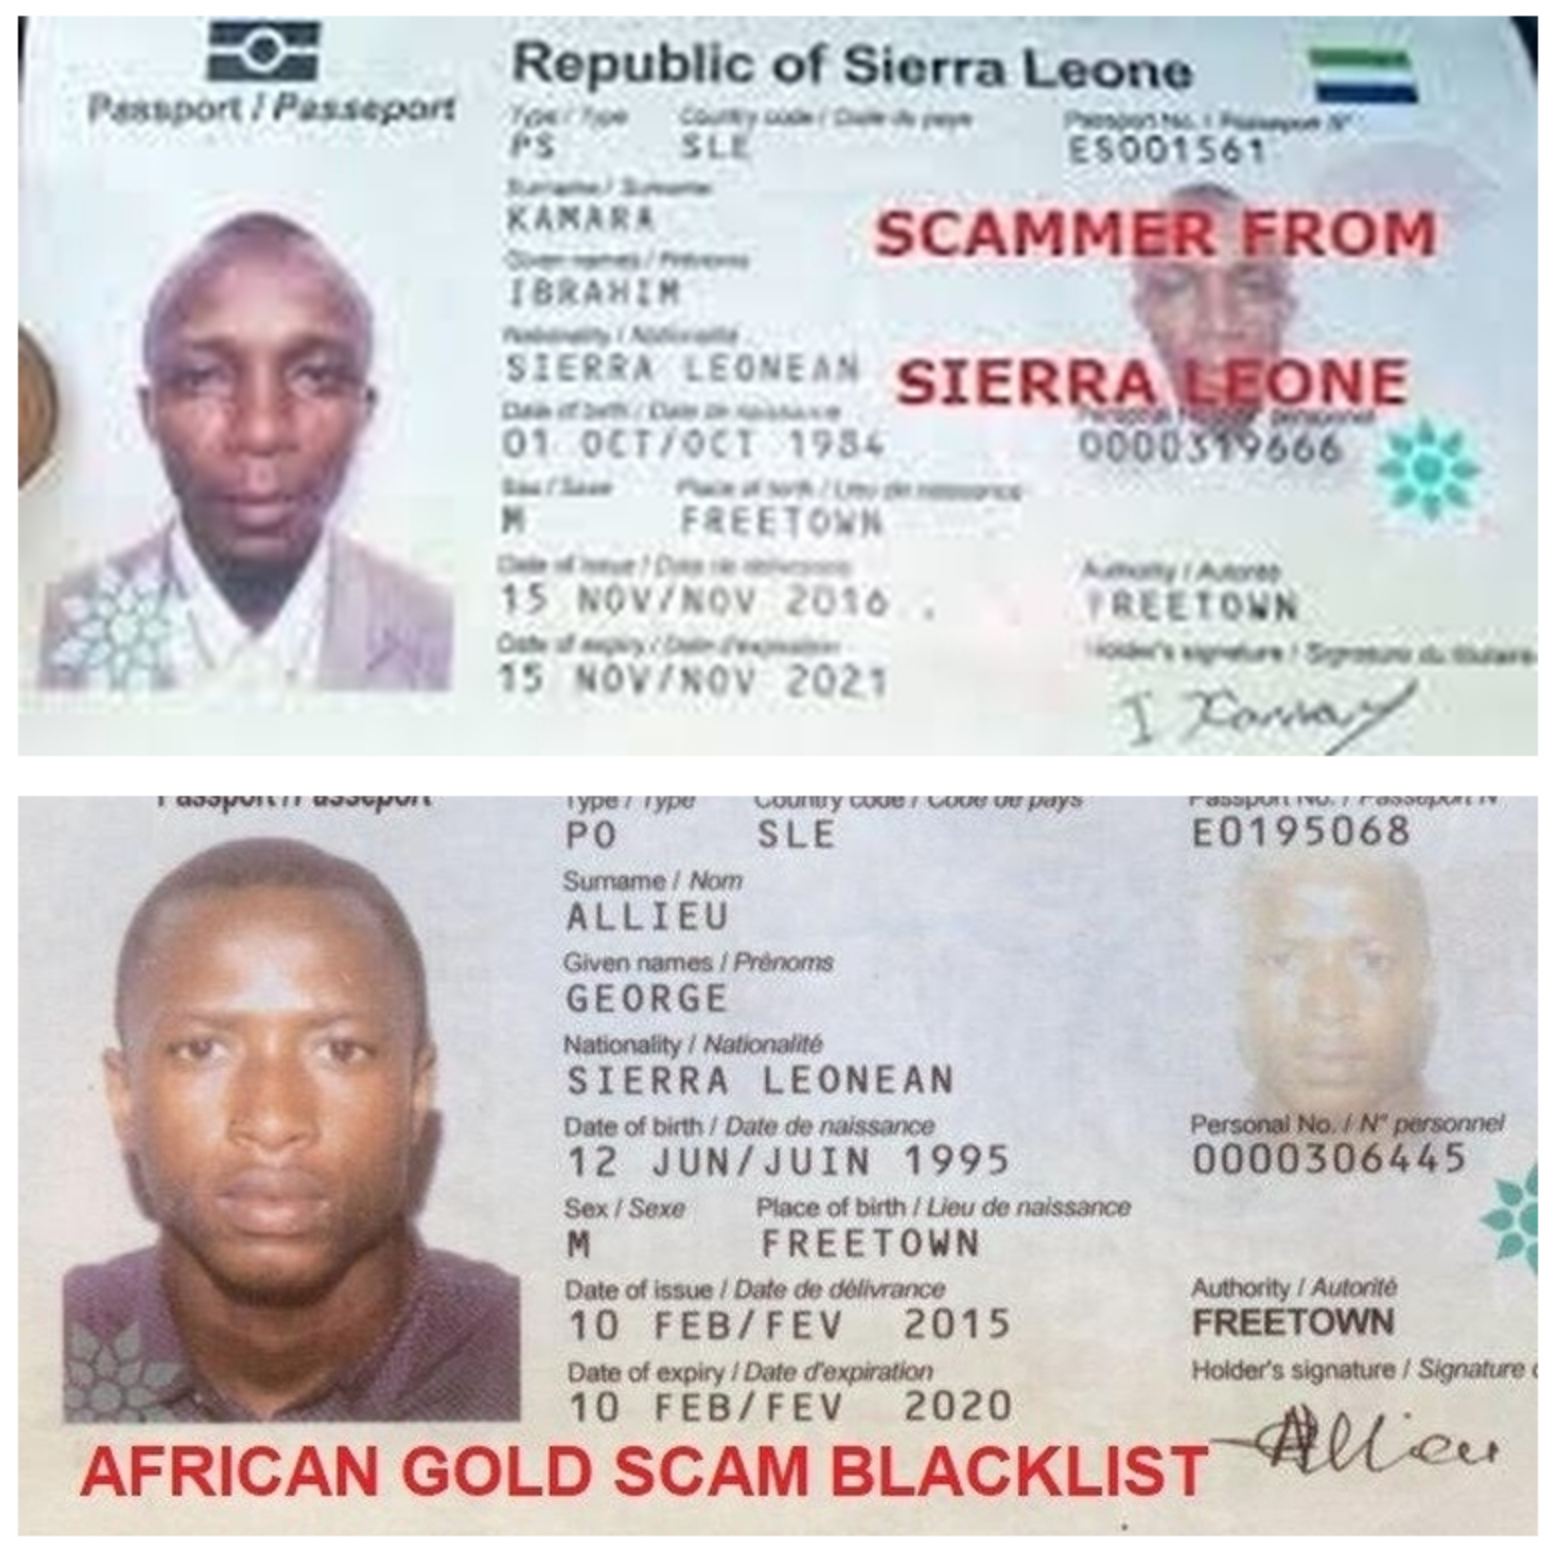 African Gold Scam Blacklist (@gold_scam) / Twitter